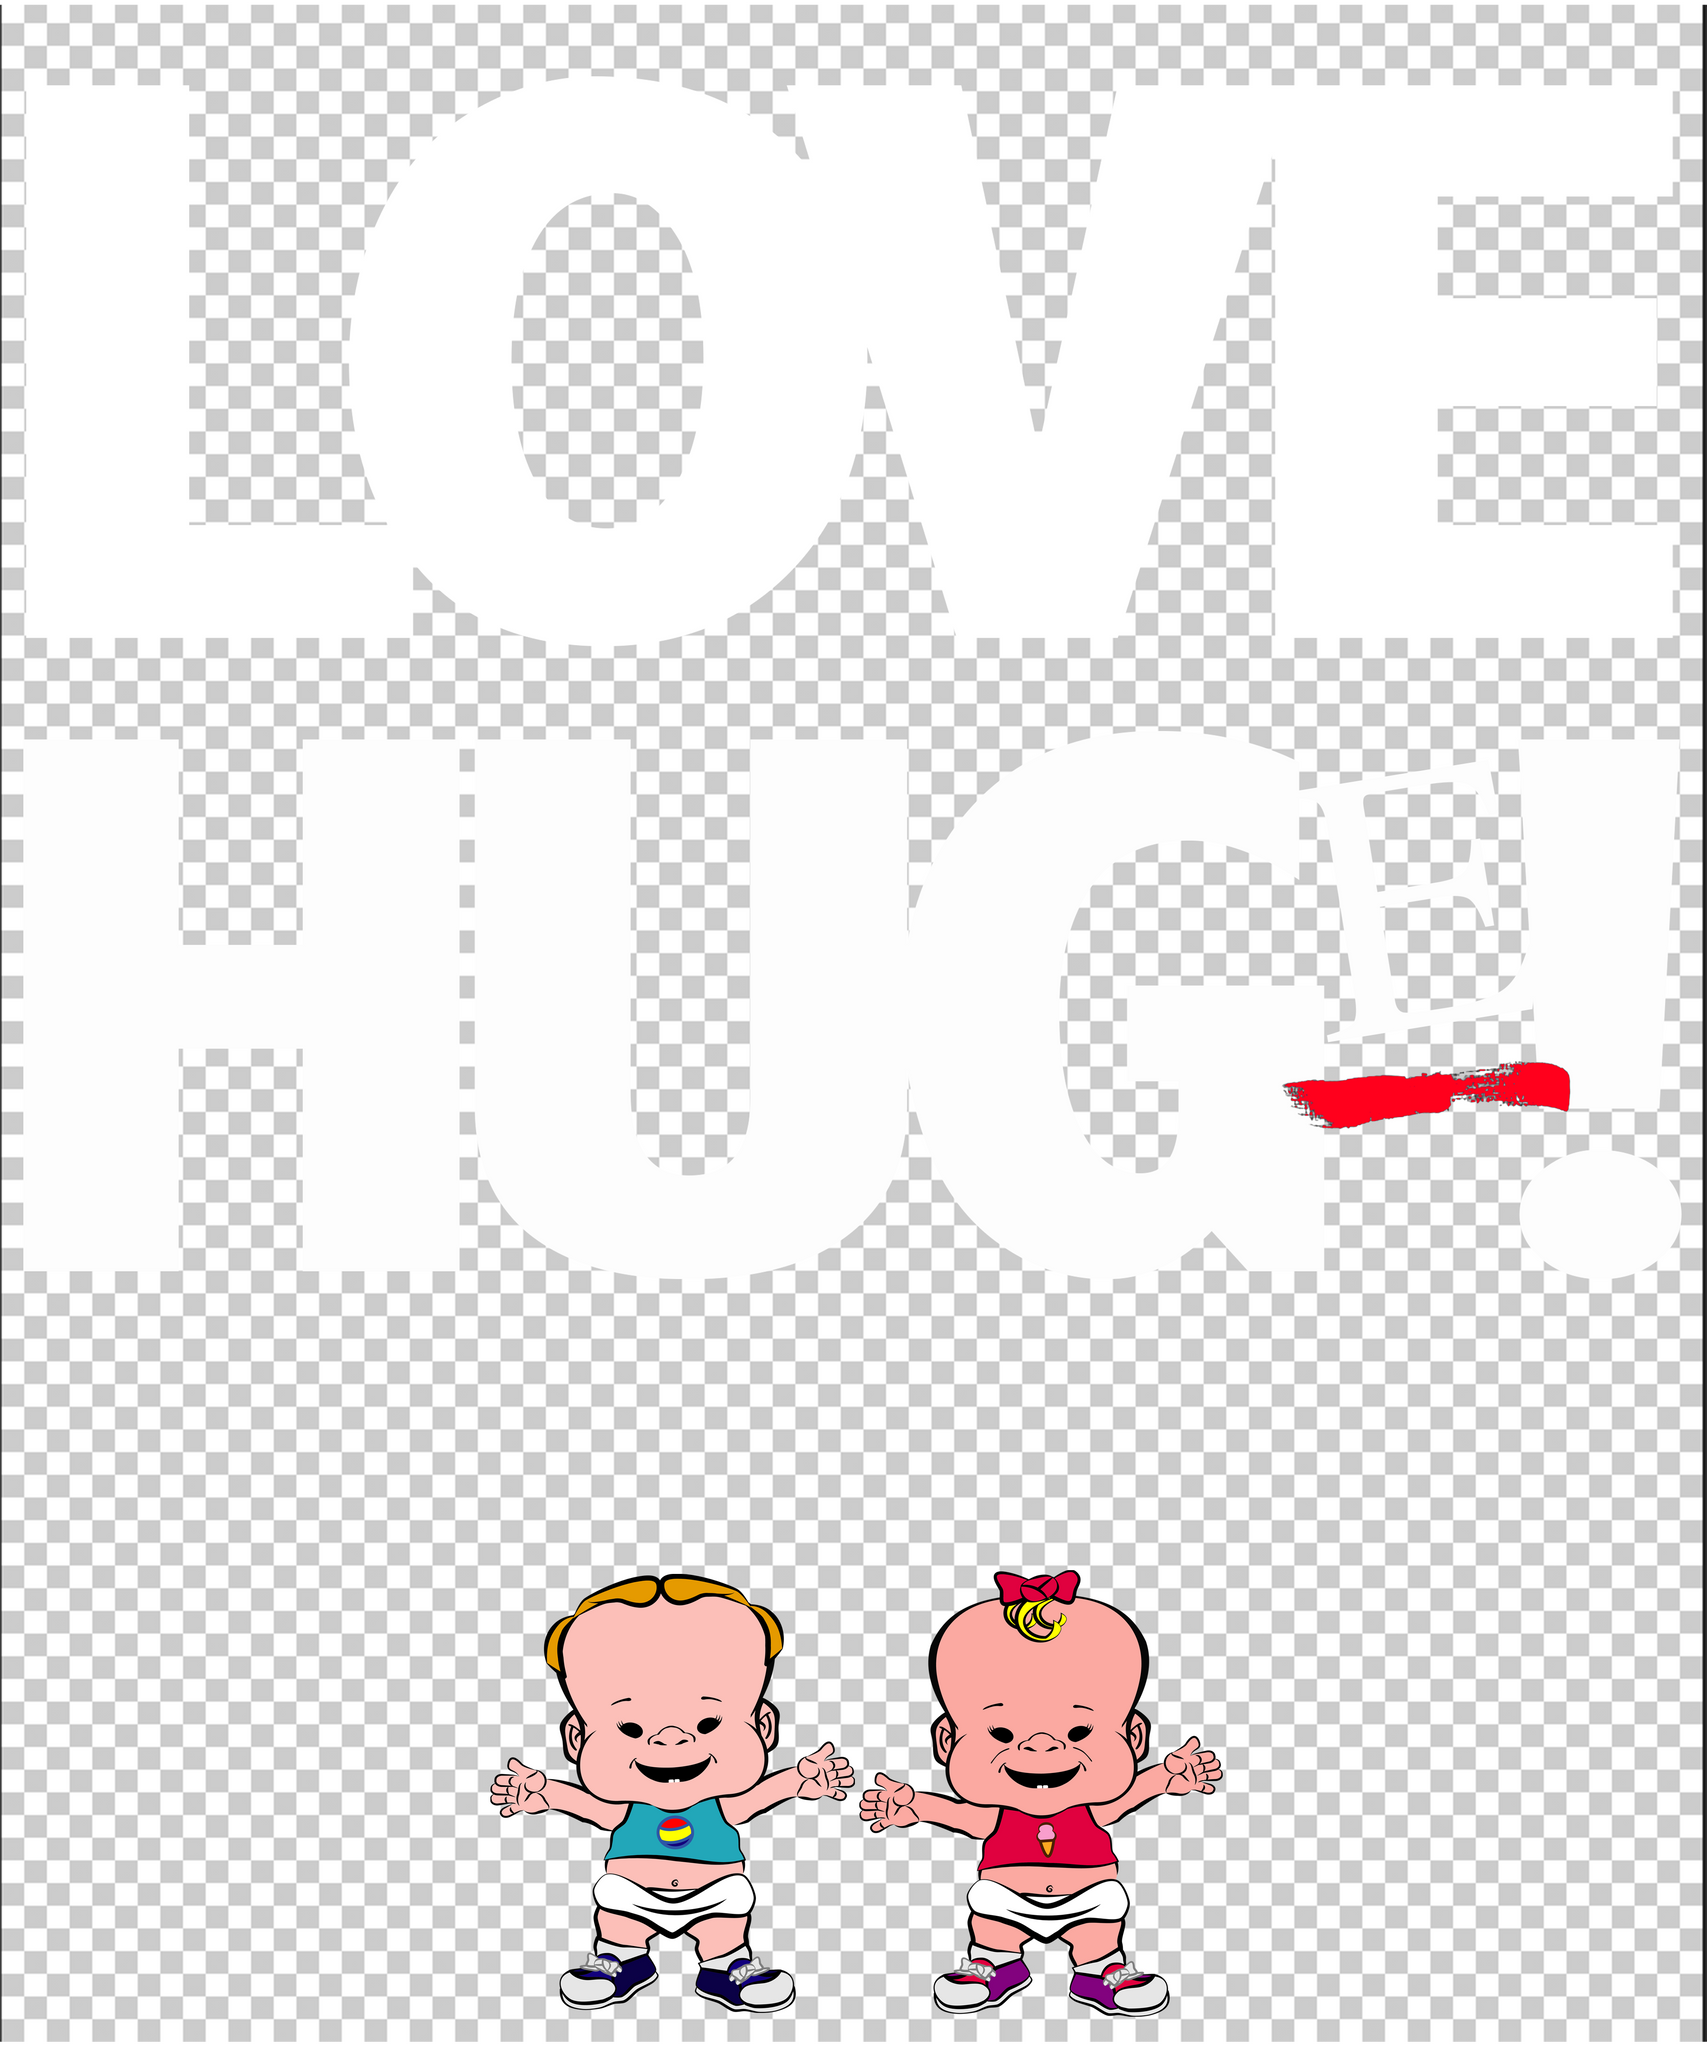 PBYZ1279_Love_Hug(e)_11_Black